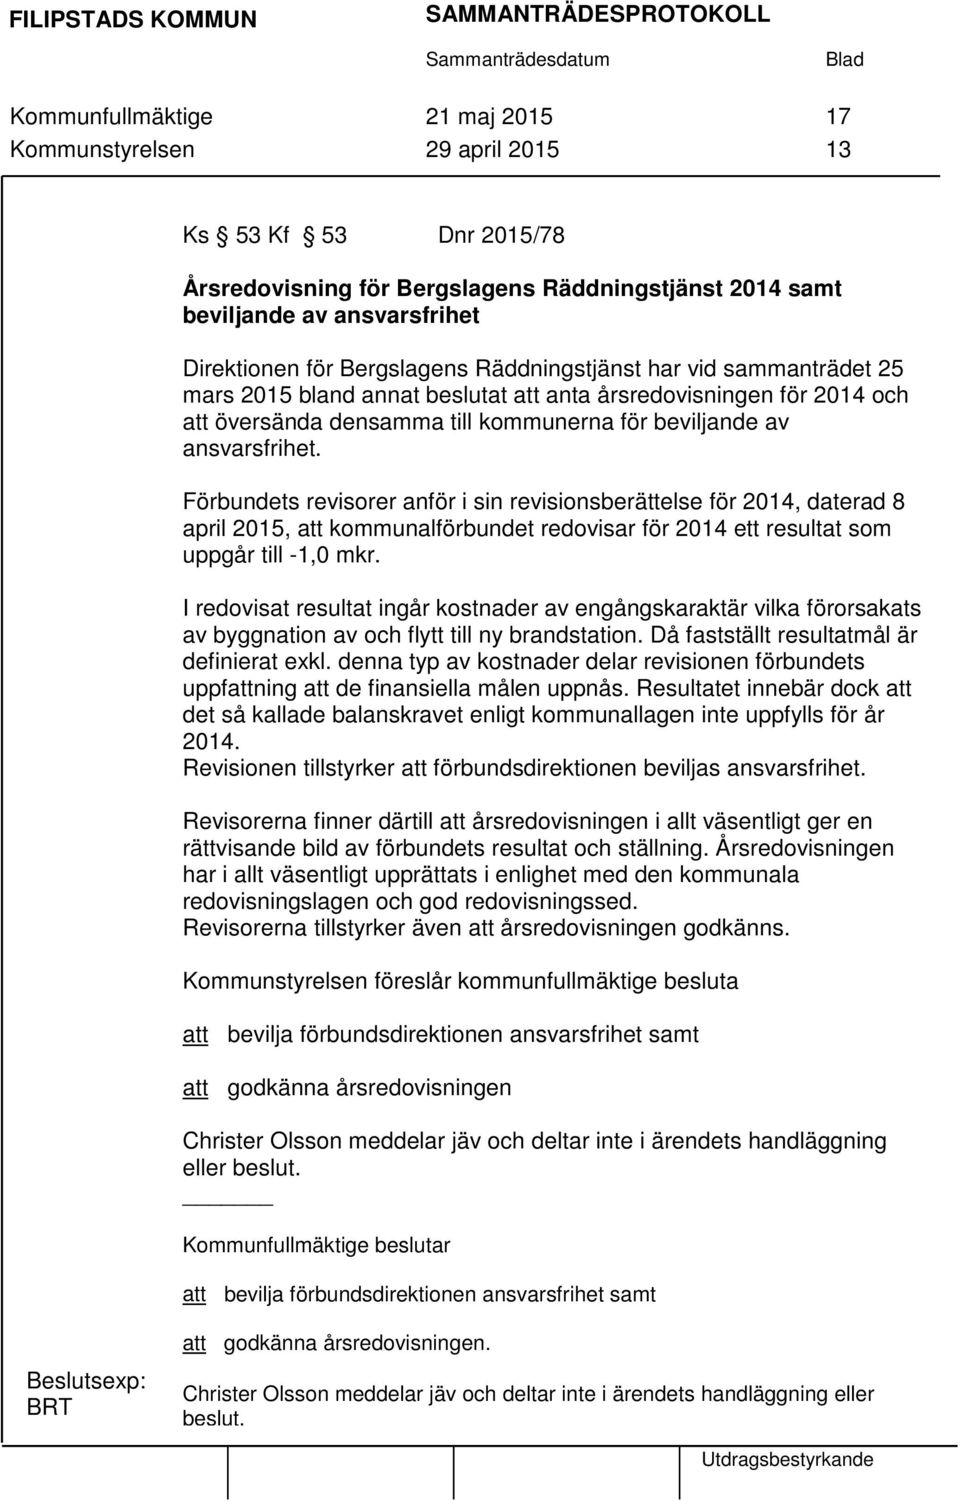 Förbundets revisorer anför i sin revisionsberättelse för 2014, daterad 8 april 2015, att kommunalförbundet redovisar för 2014 ett resultat som uppgår till -1,0 mkr.